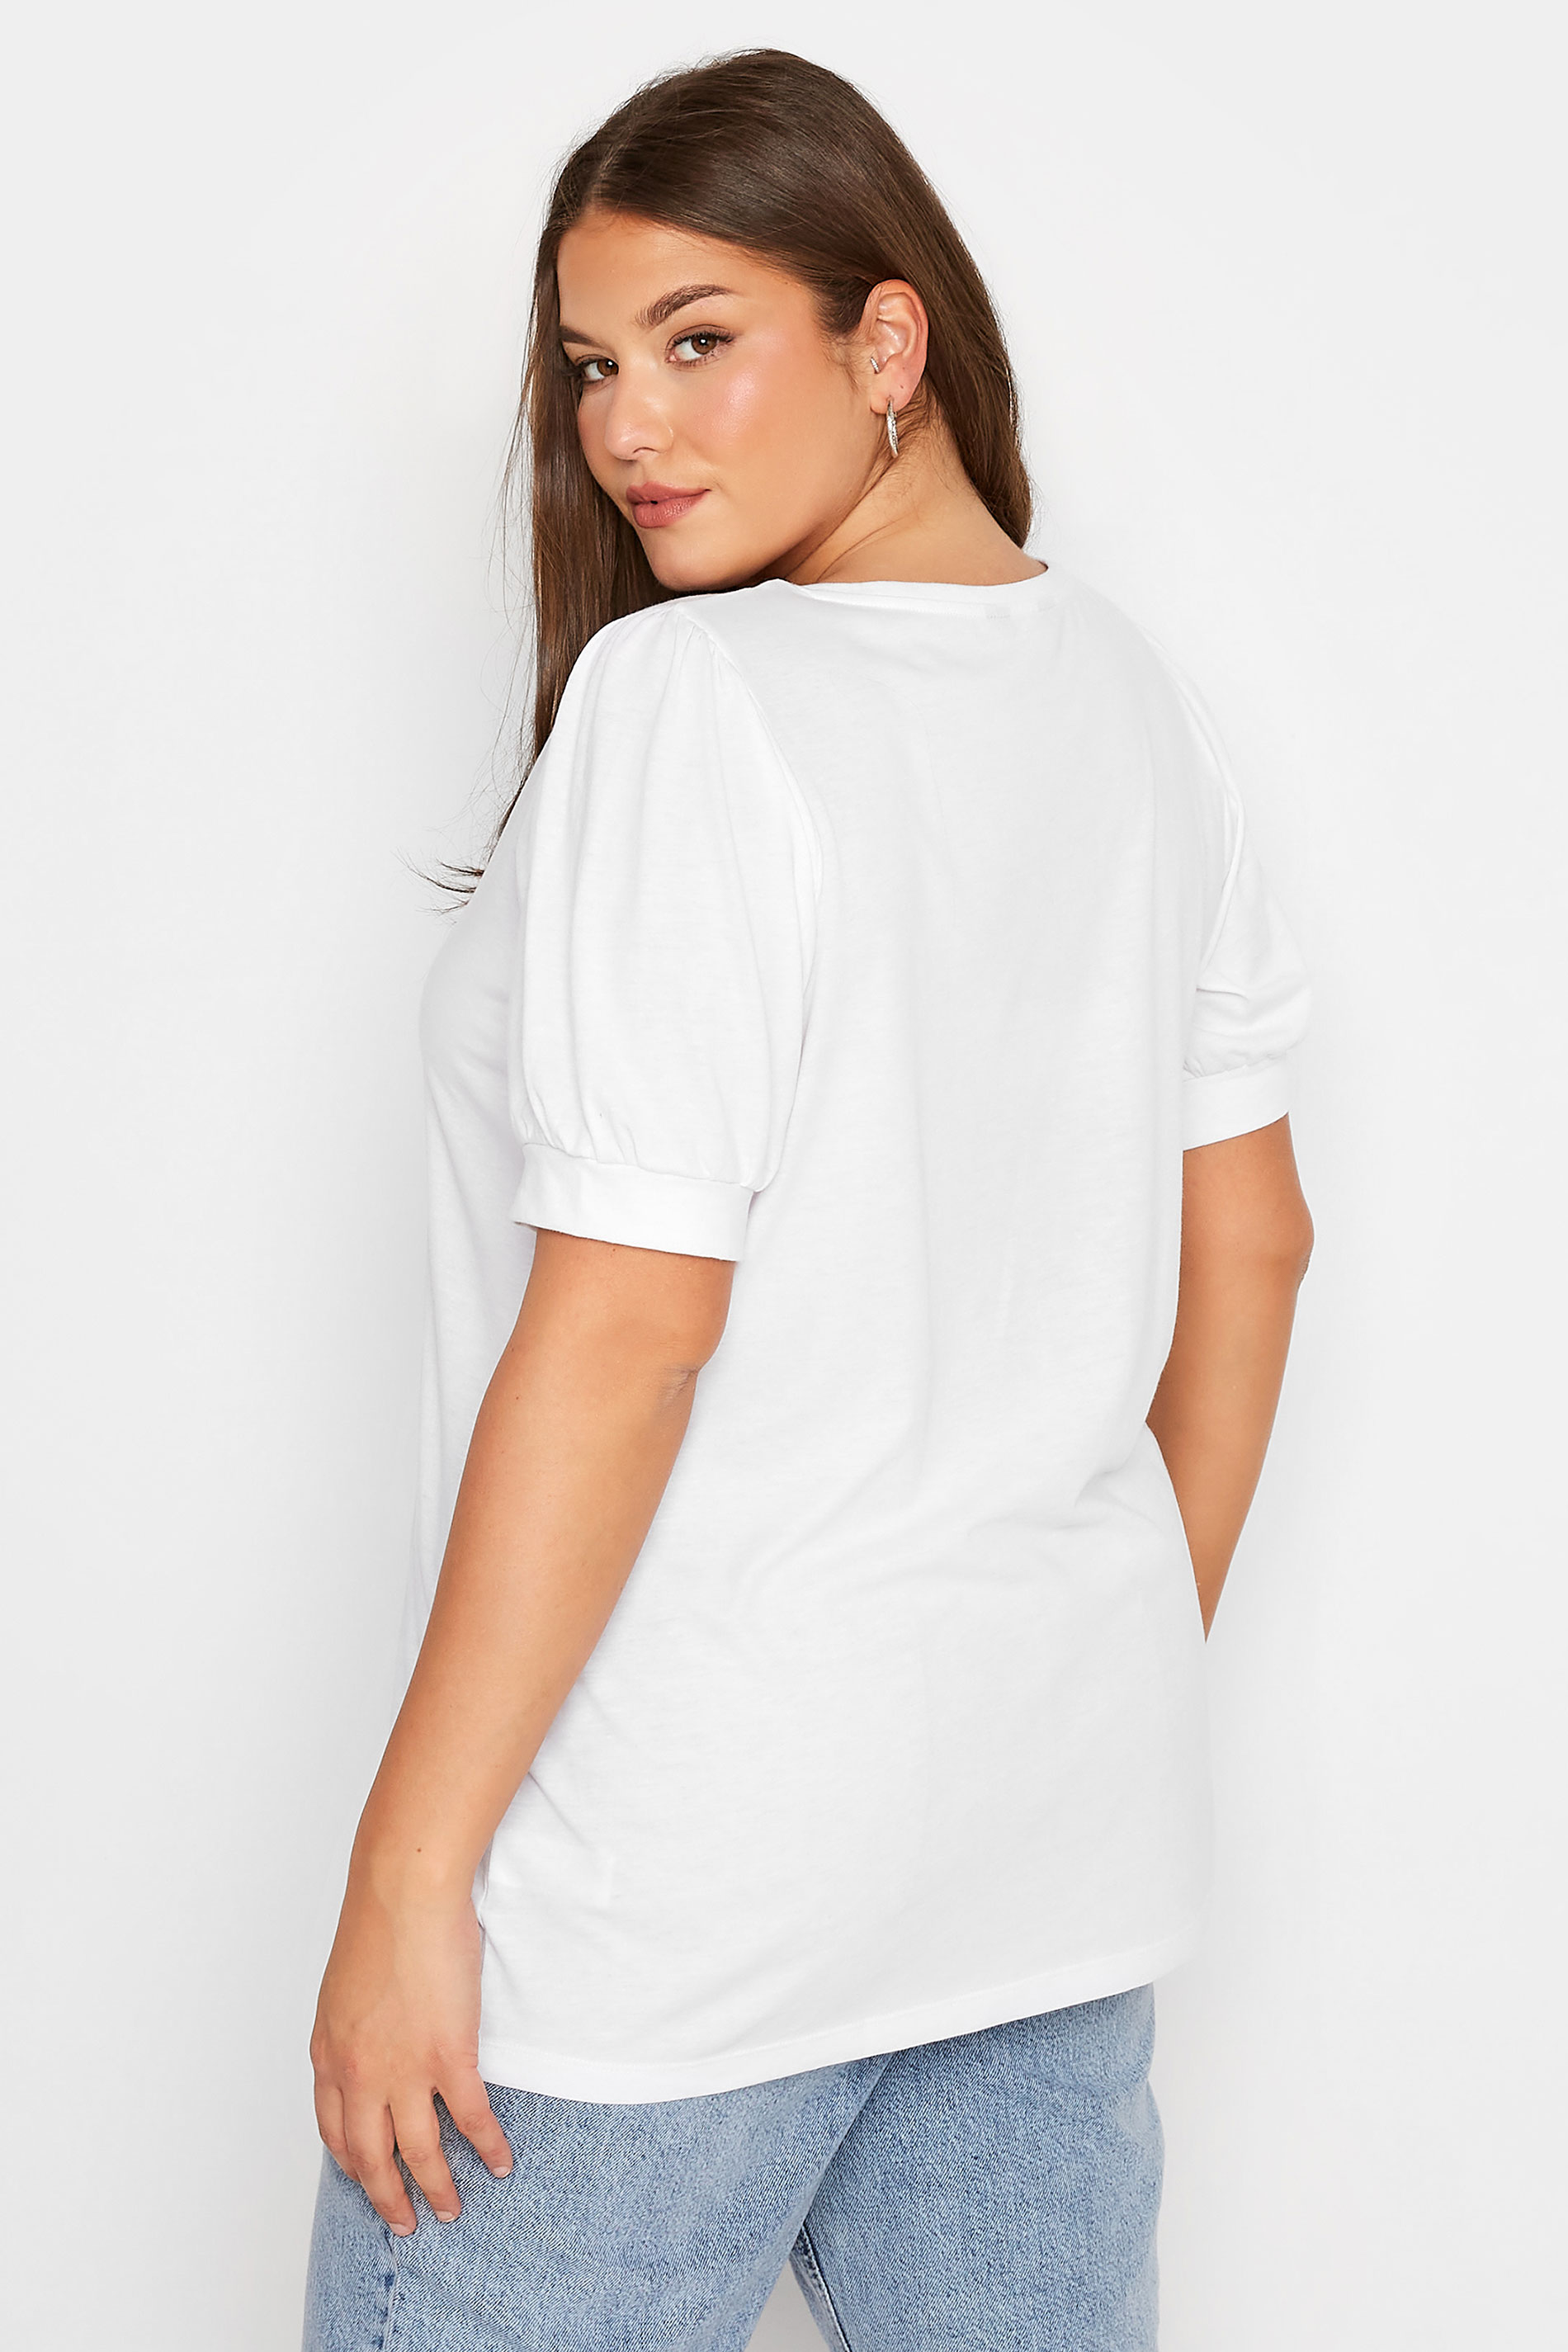 Grande taille  Tops Grande taille  Tops dÉté | T-Shirt Blanc Manches Courtes Bouffantes - WO70904